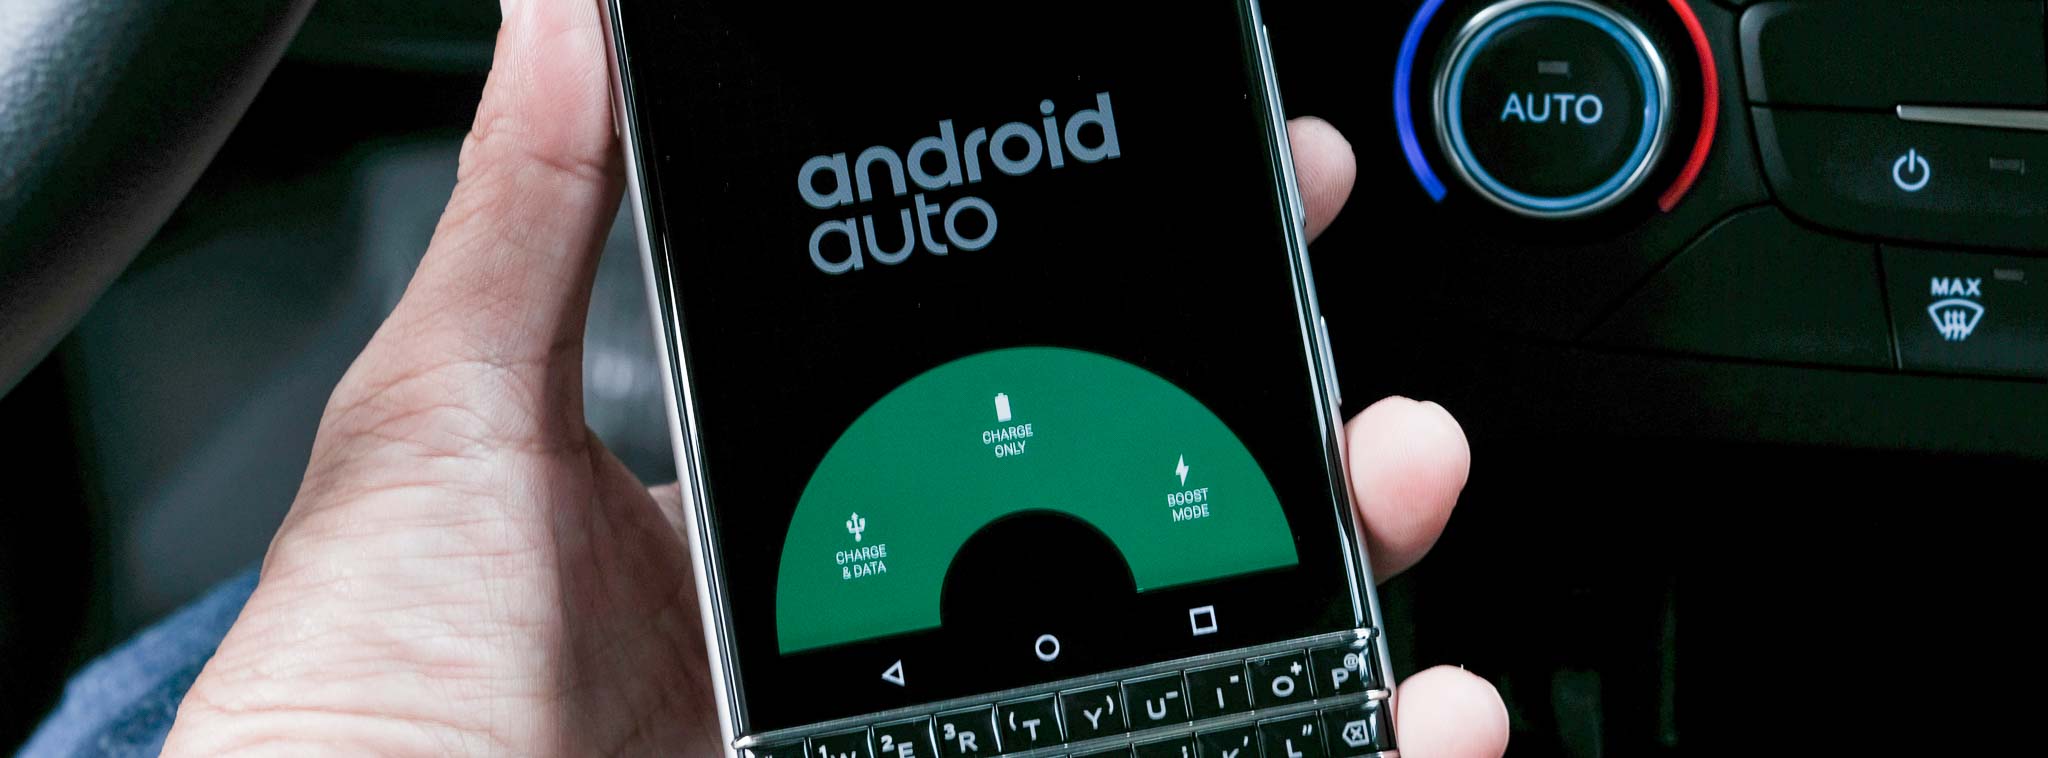 Trên tay Android Auto: giao diện đẹp, ít ứng dụng, chưa hỗ trợ chính thức VN